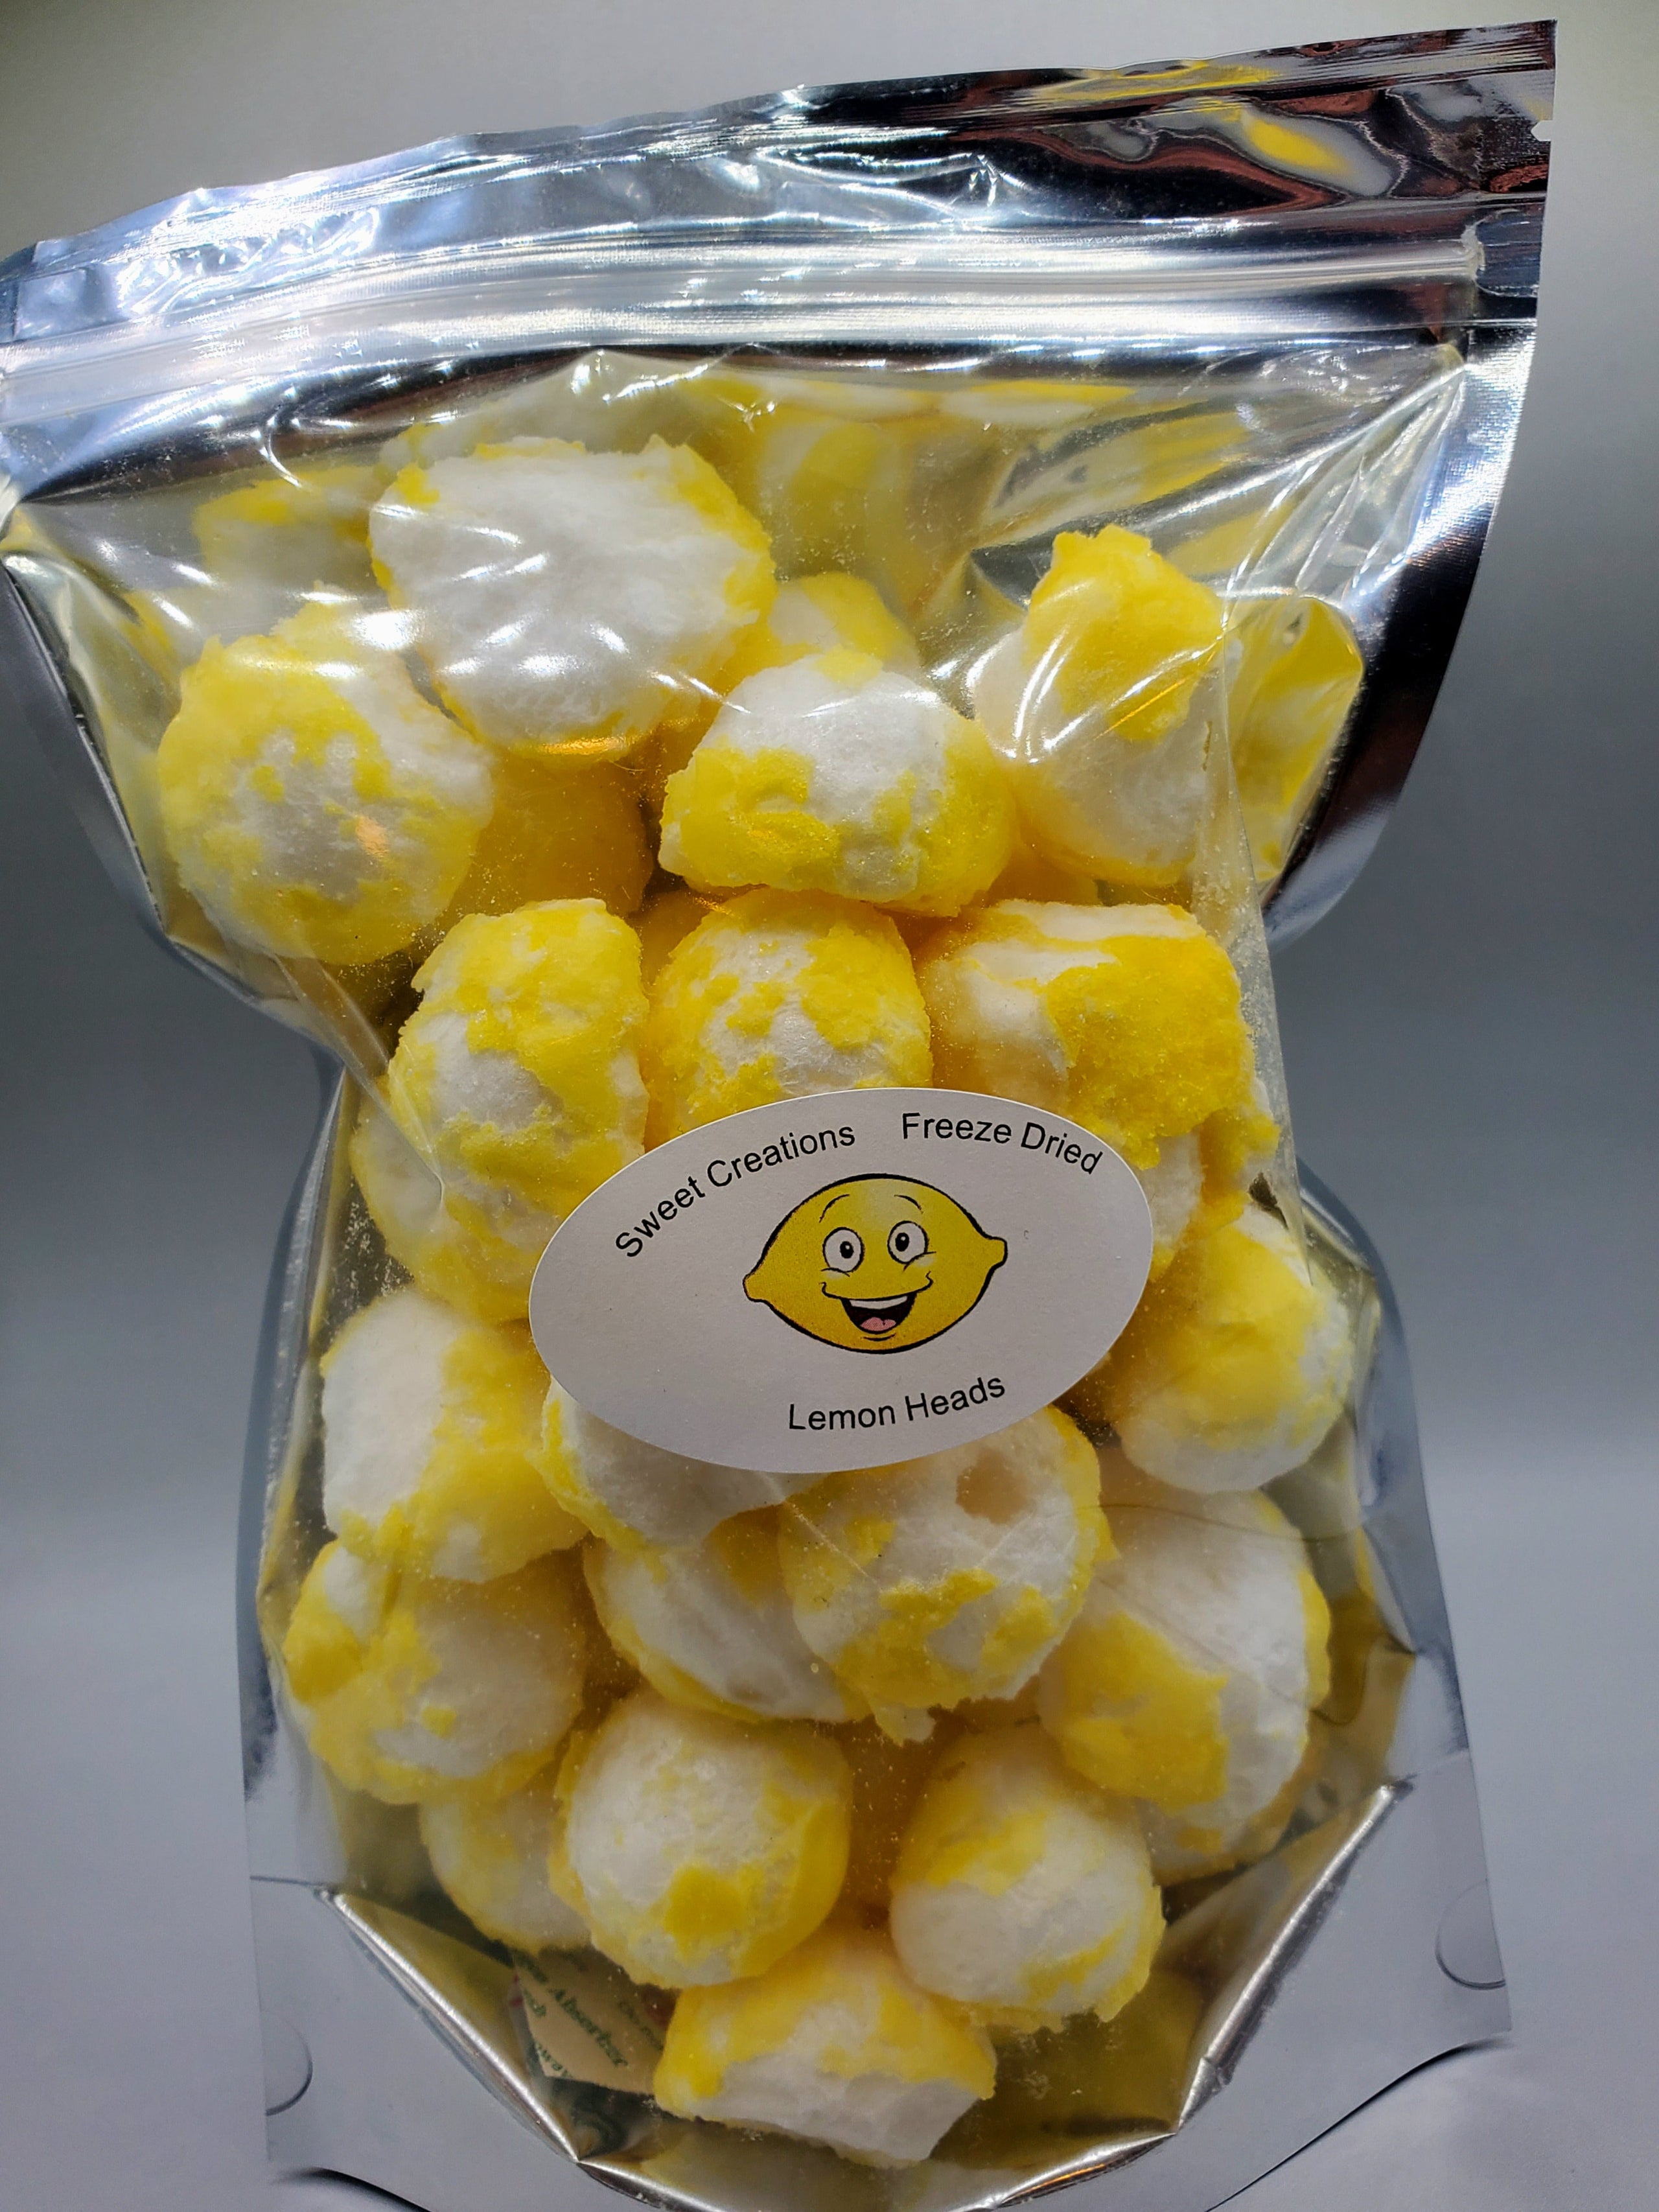 Lunar Zingers - Freeze Dried Lemon Drop Candy - Schimpff's - 1.5 oz